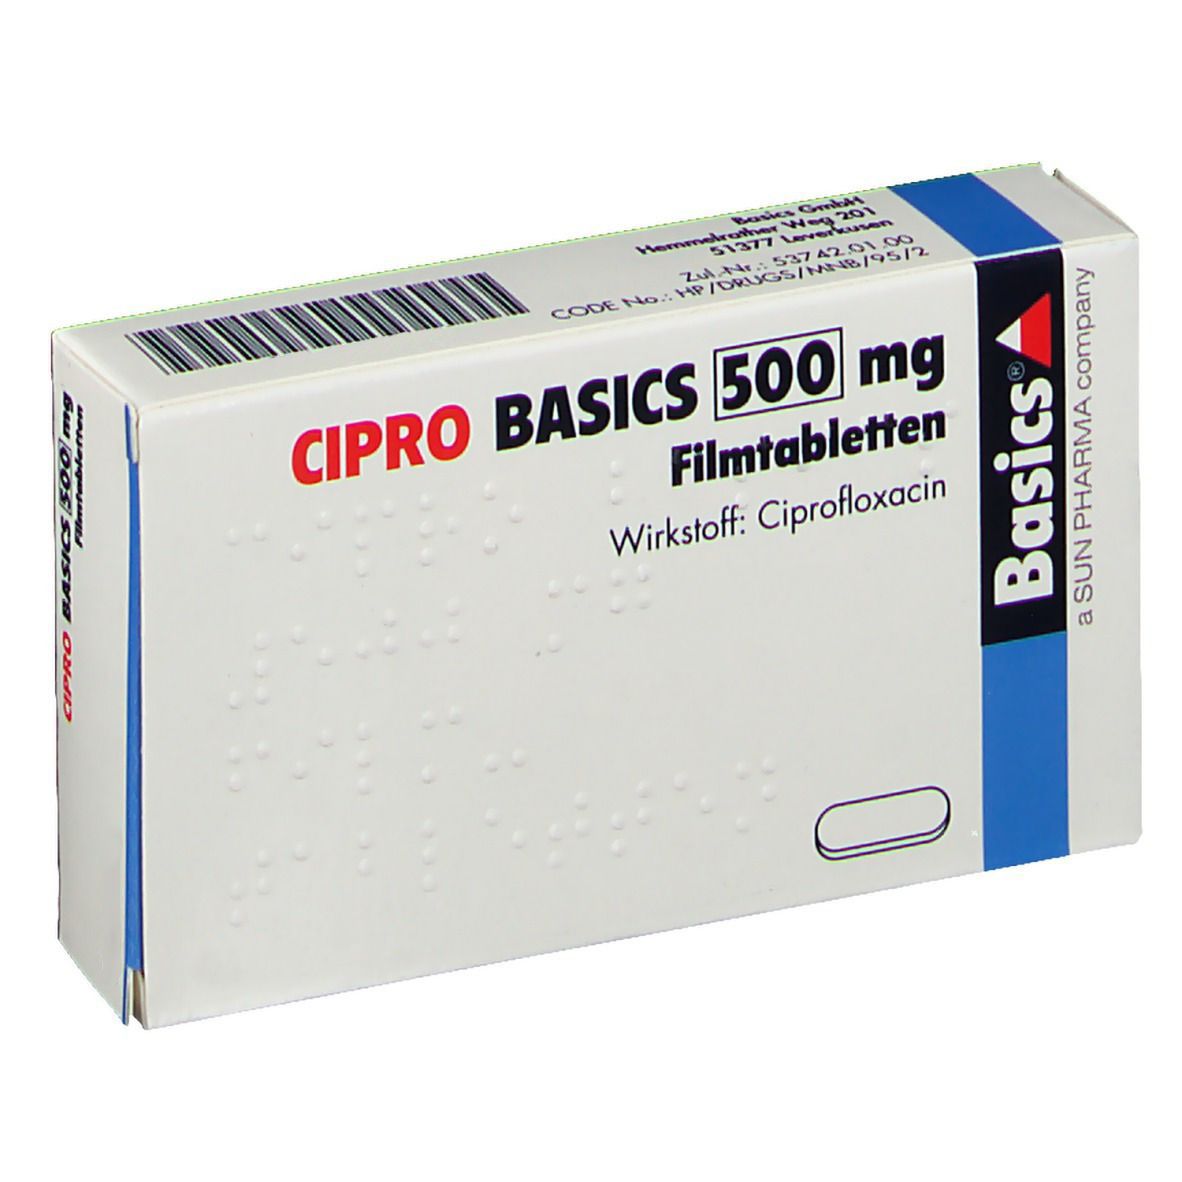 CIPRO BASICS 500 mg